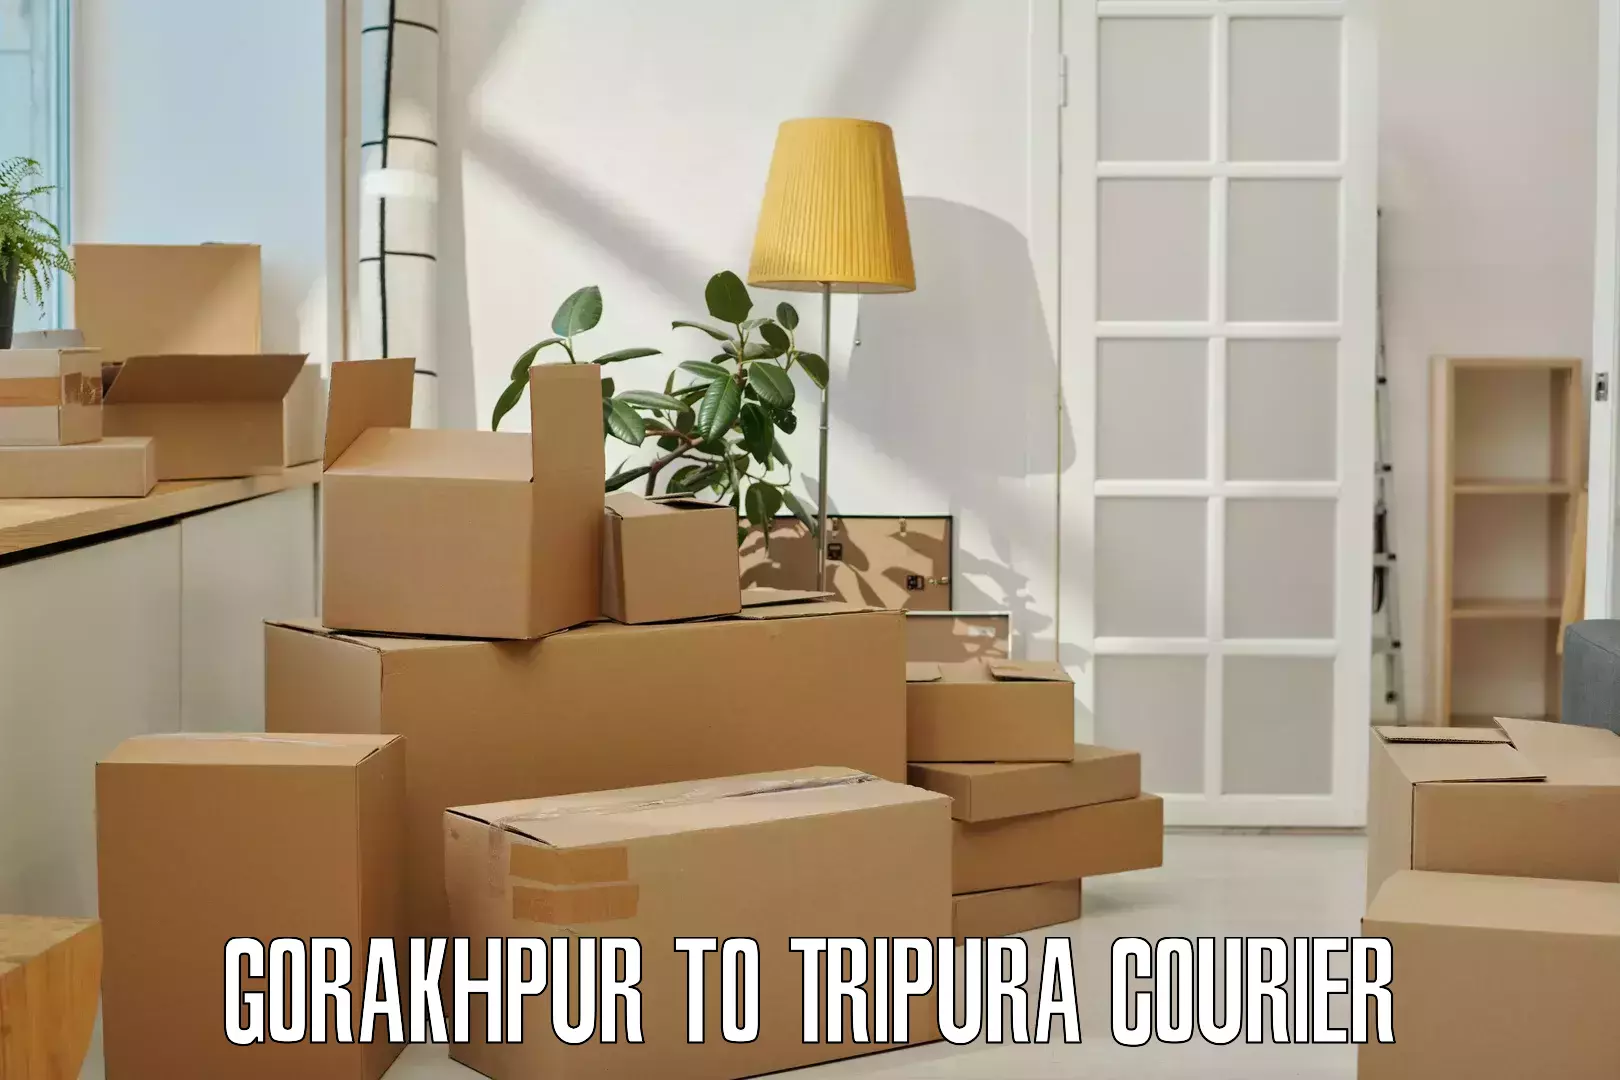 International parcel service Gorakhpur to Kailashahar